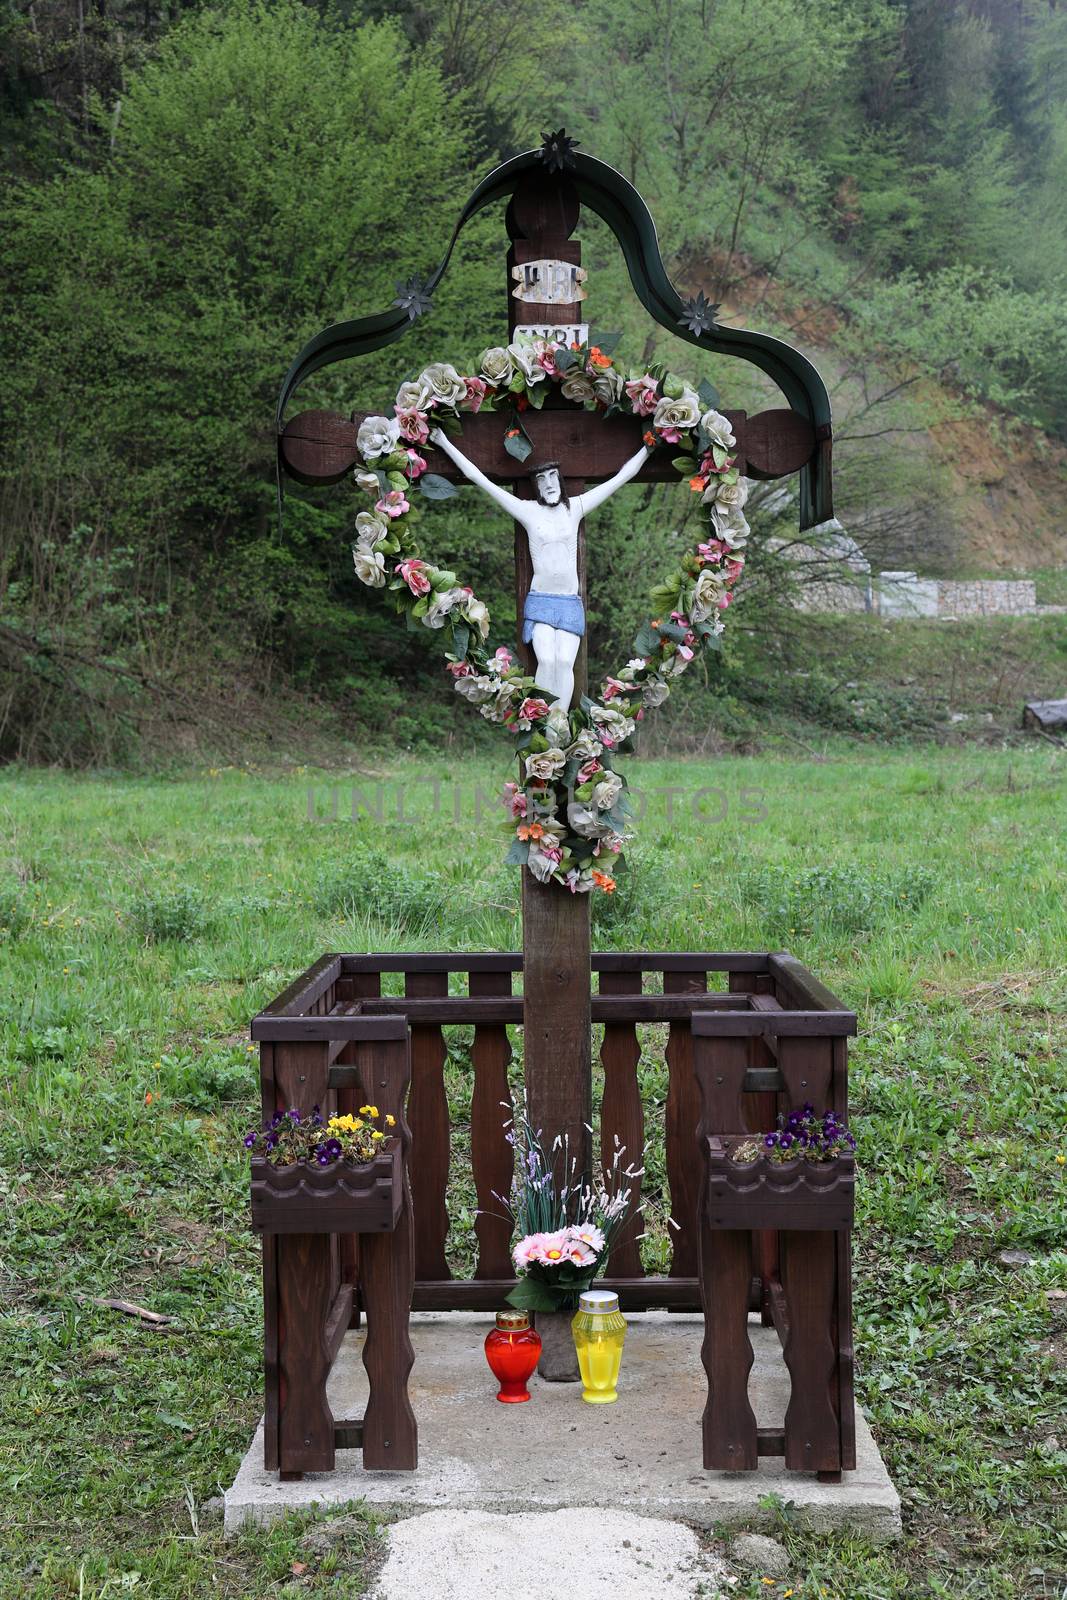 Roadside Crucifix in Zagorje region, Croatia